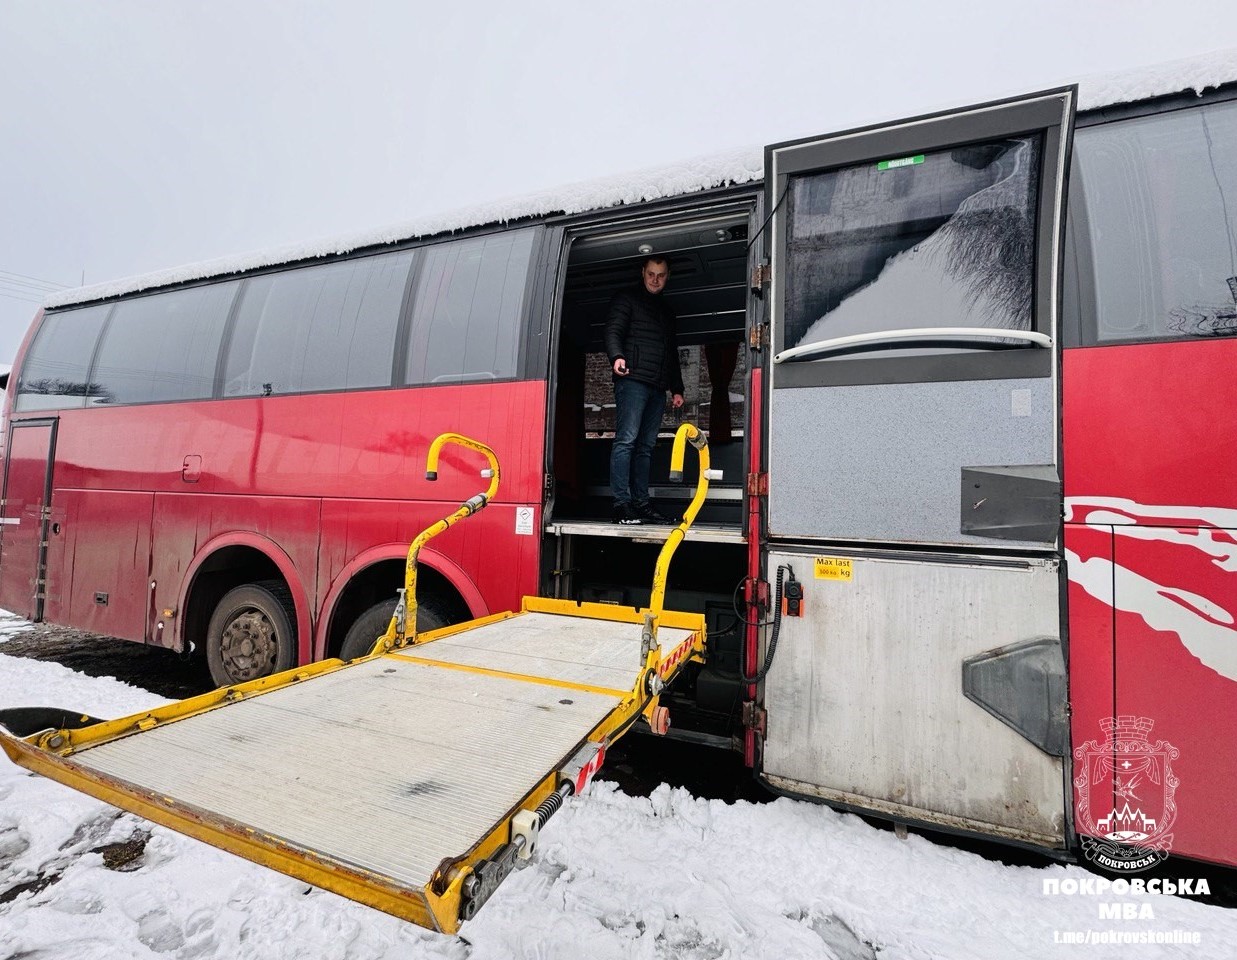 Подъемник для коляски в автобусе из Швеции. Фото: Покровская МВА